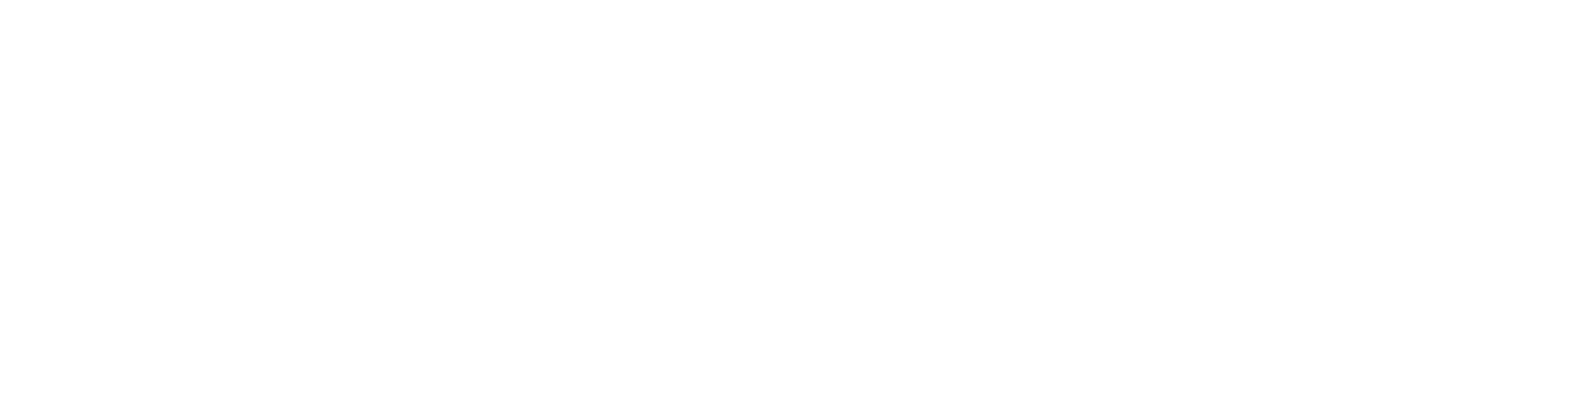 Allianz logo large for dark backgrounds (transparent PNG)